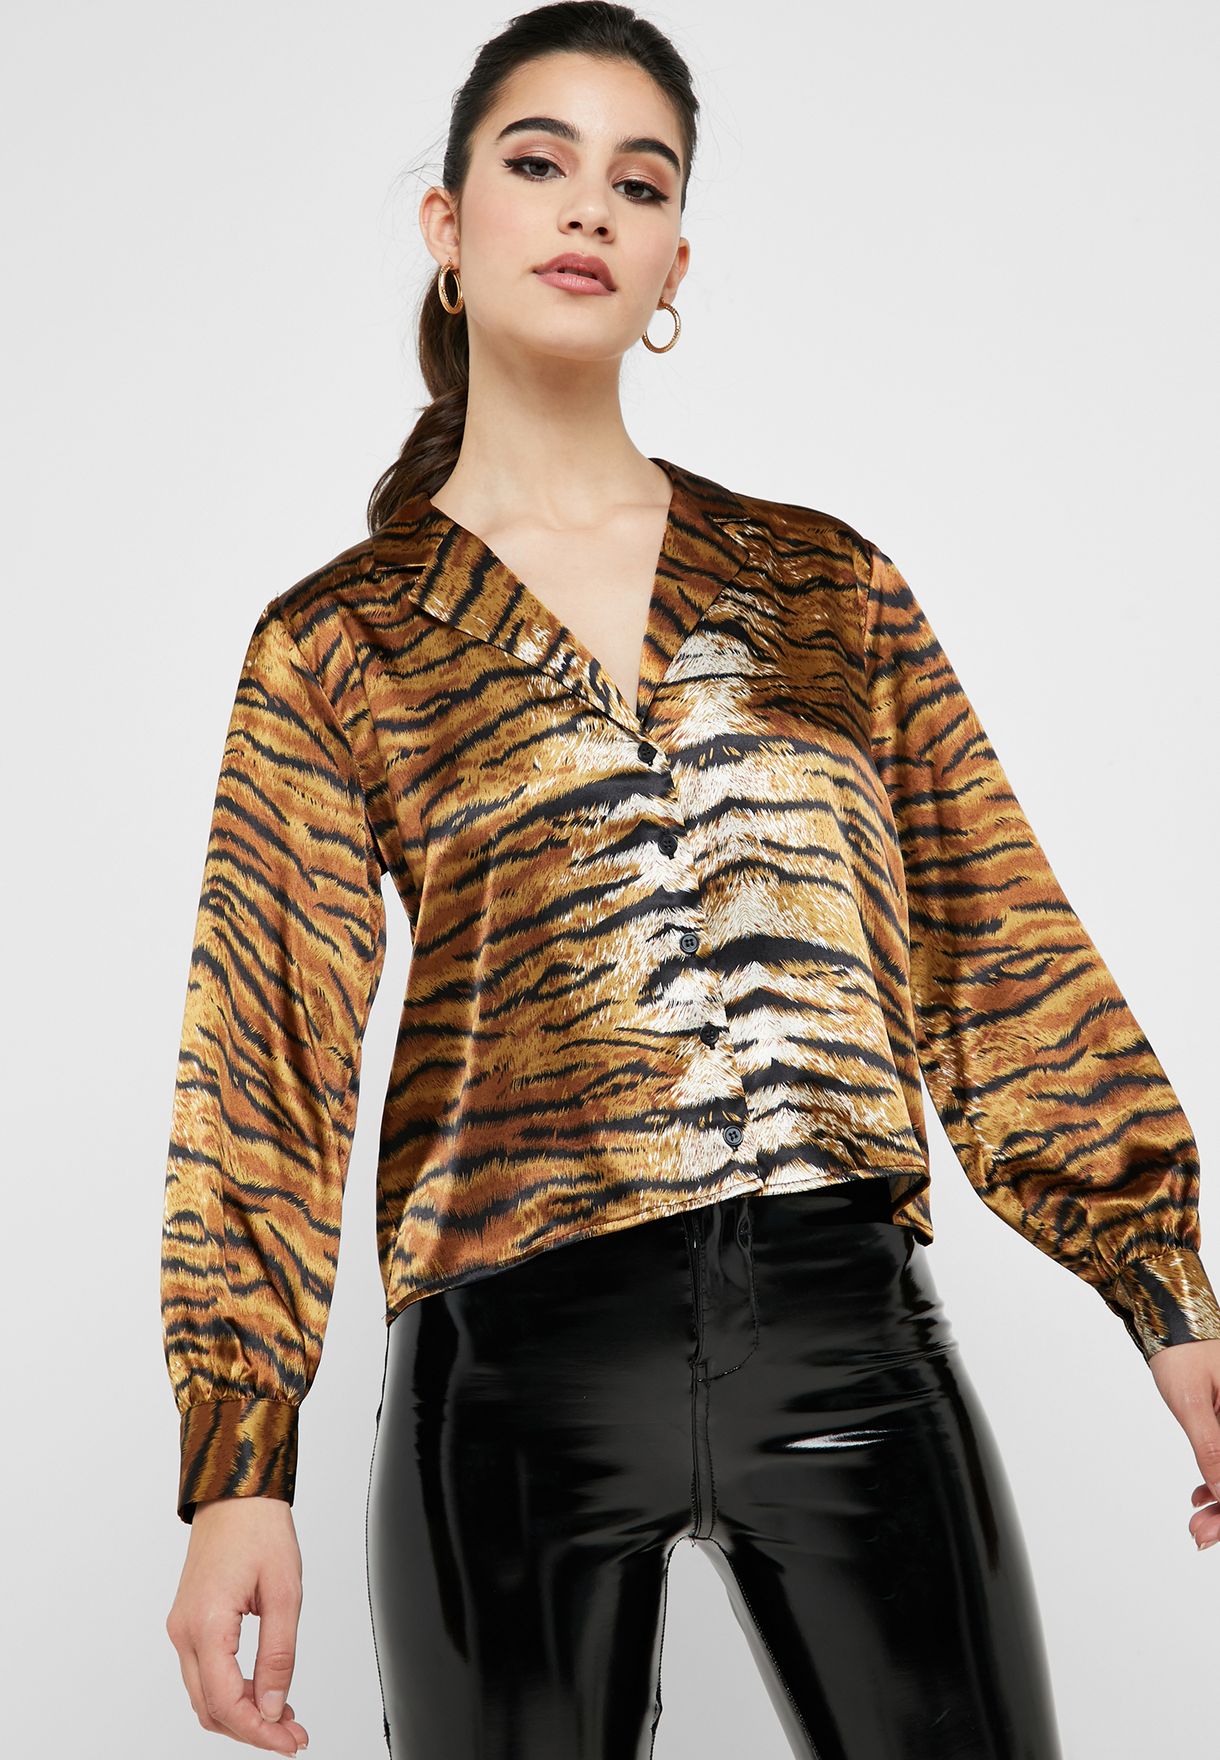 tiger shirt women's